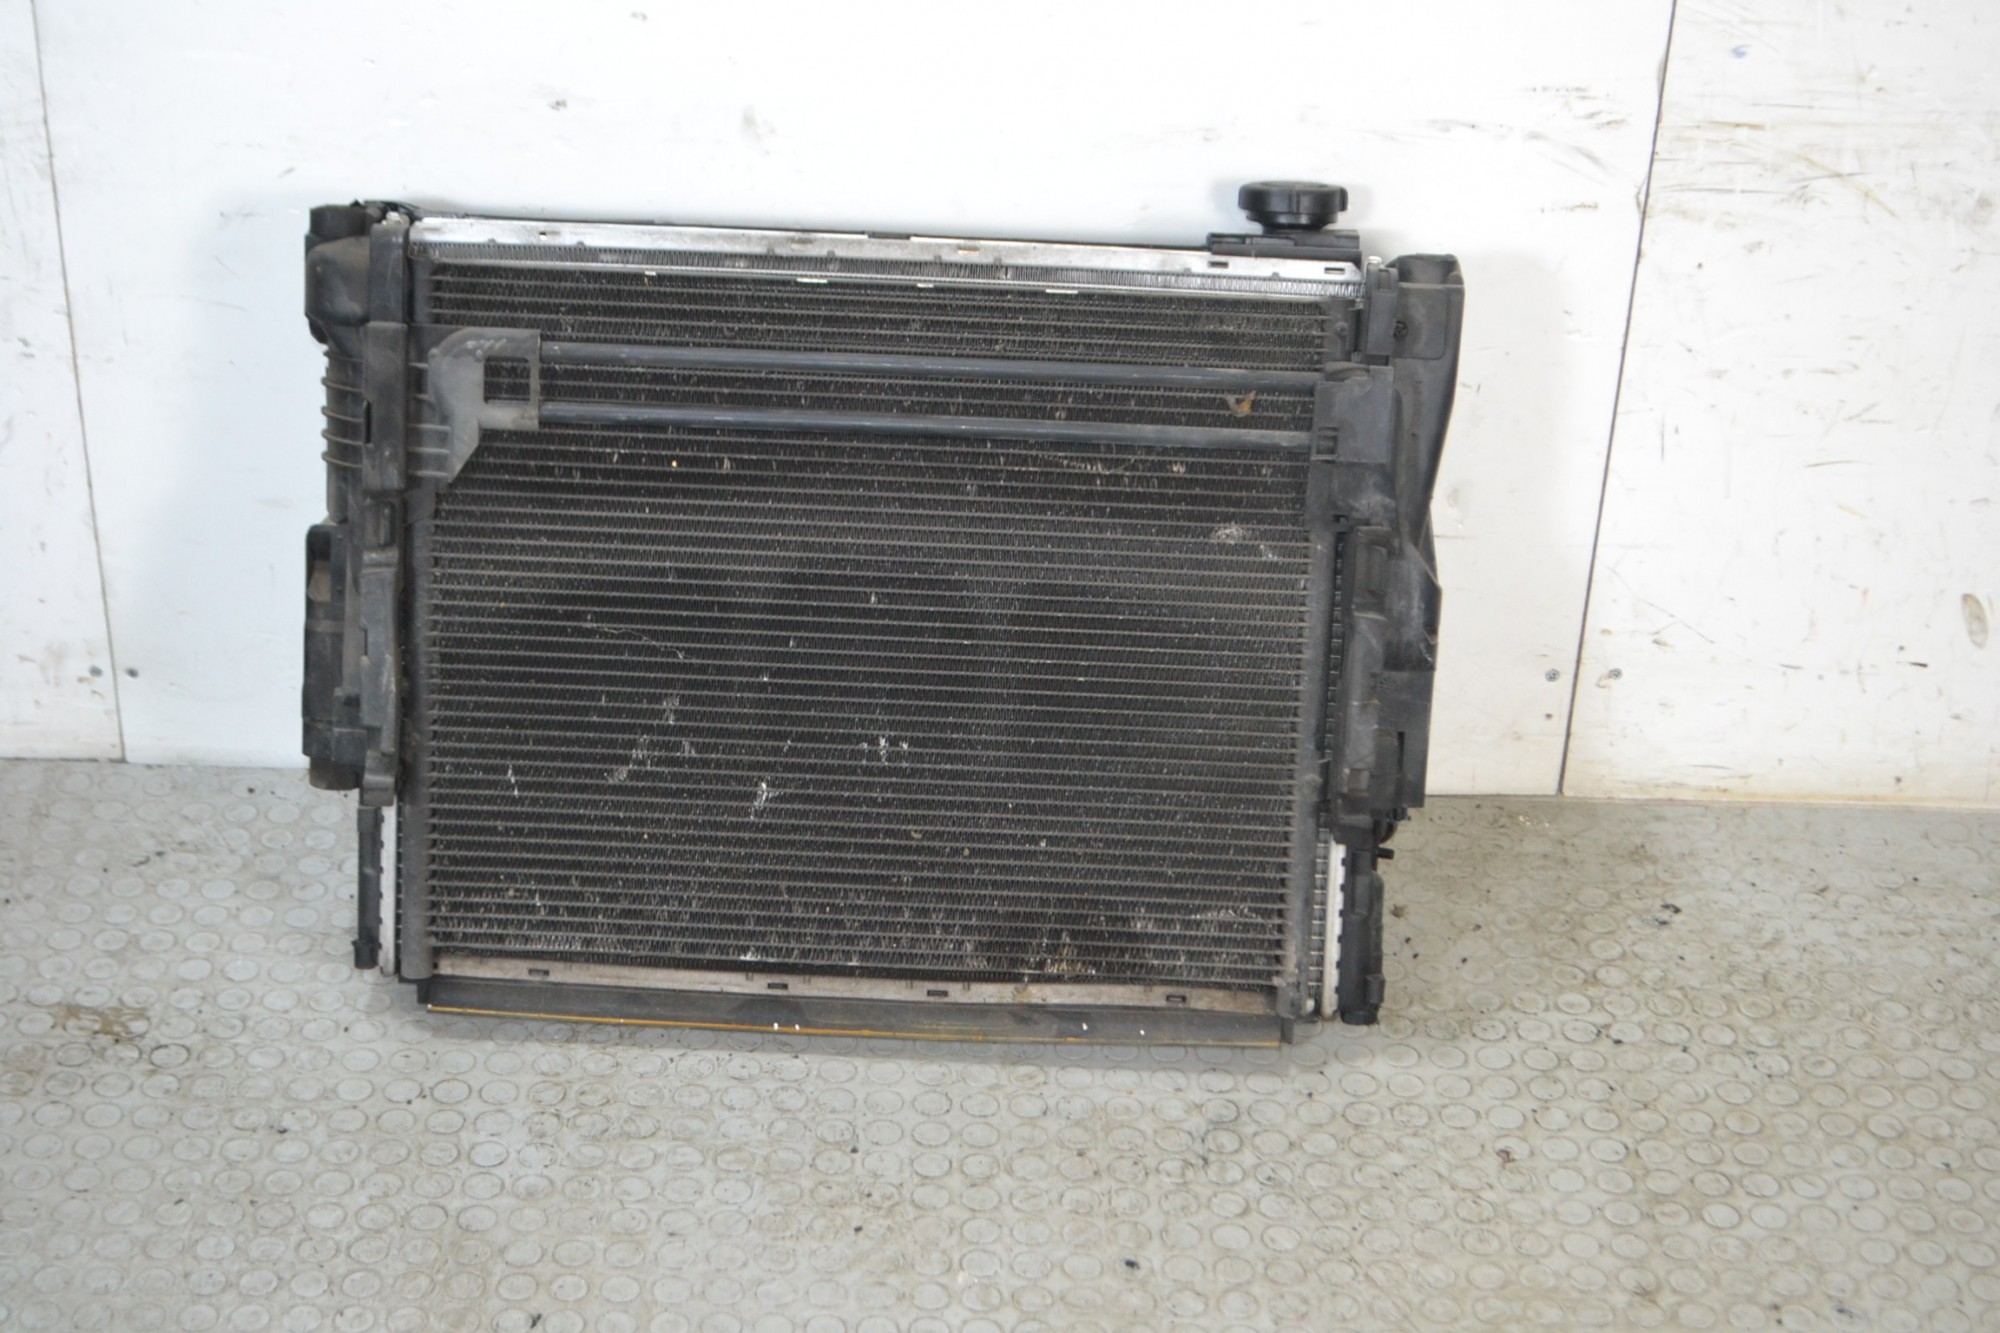 Pacco radiatori + elettroventola Bmw Serie 3 E46 Dal 1998 al 2005 Benzina  1672152487900